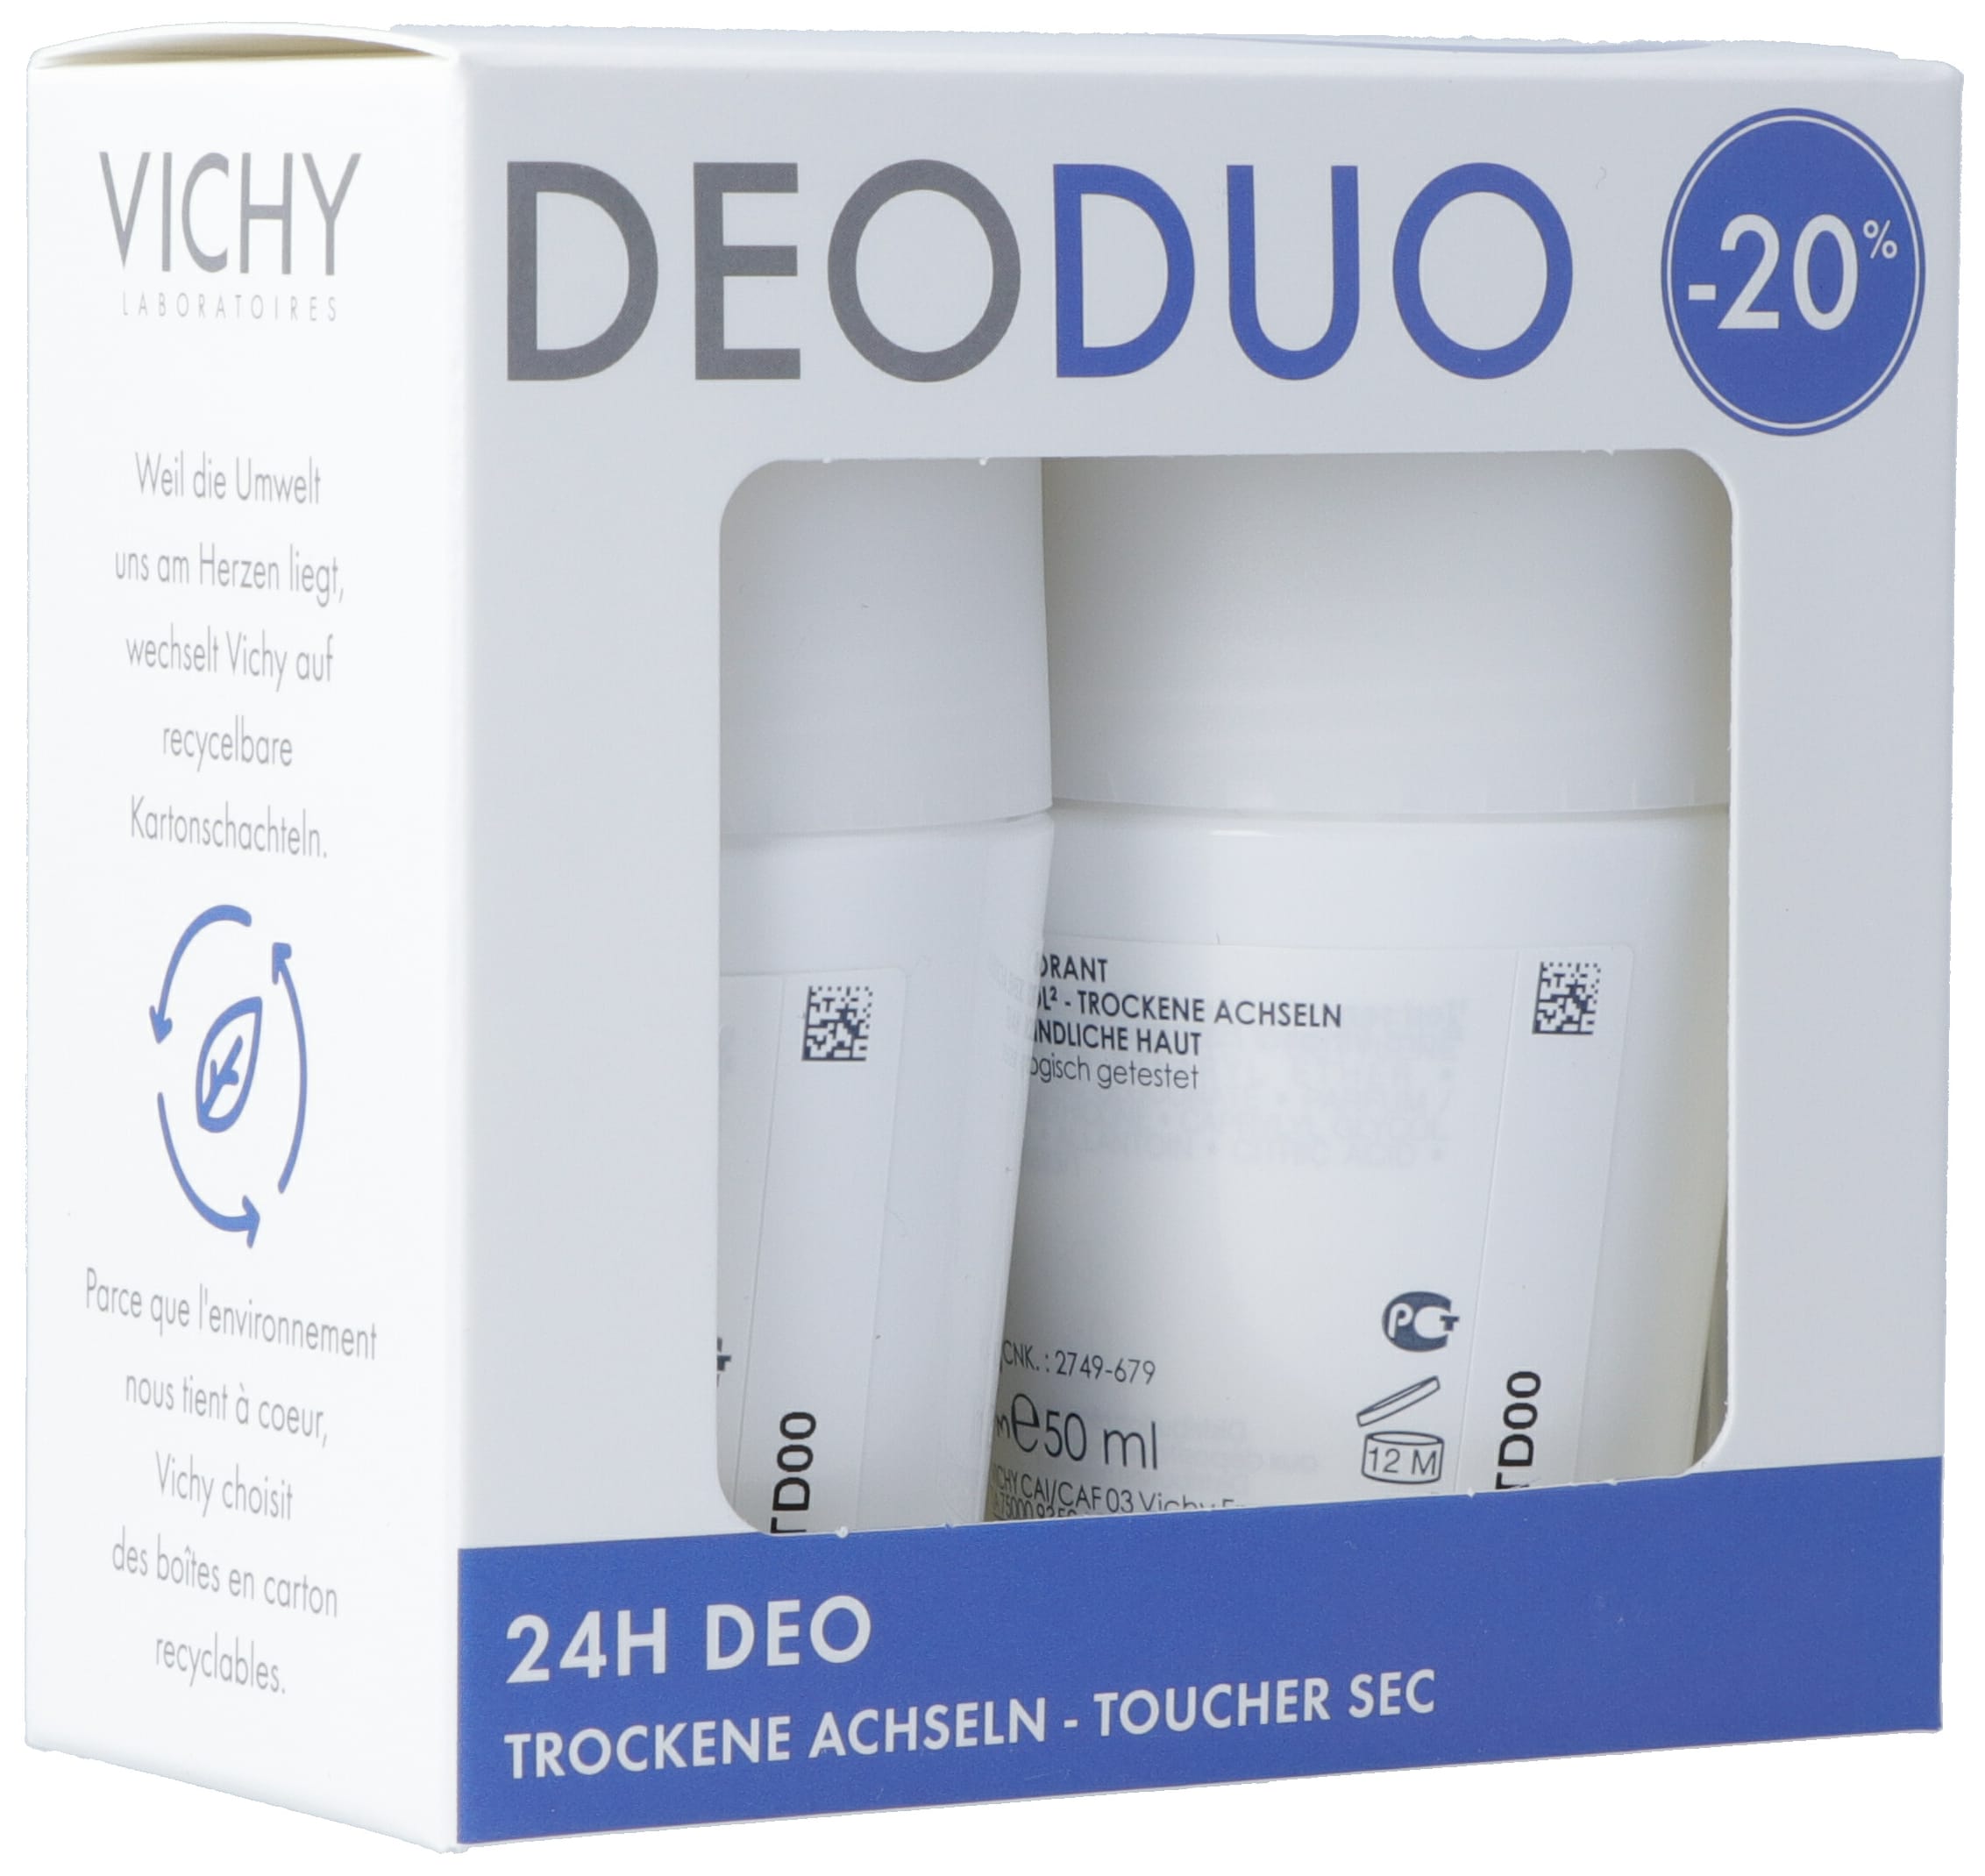 VICHY Deo Anti Nässe Duo -20% 2 Roll-on 50 ml